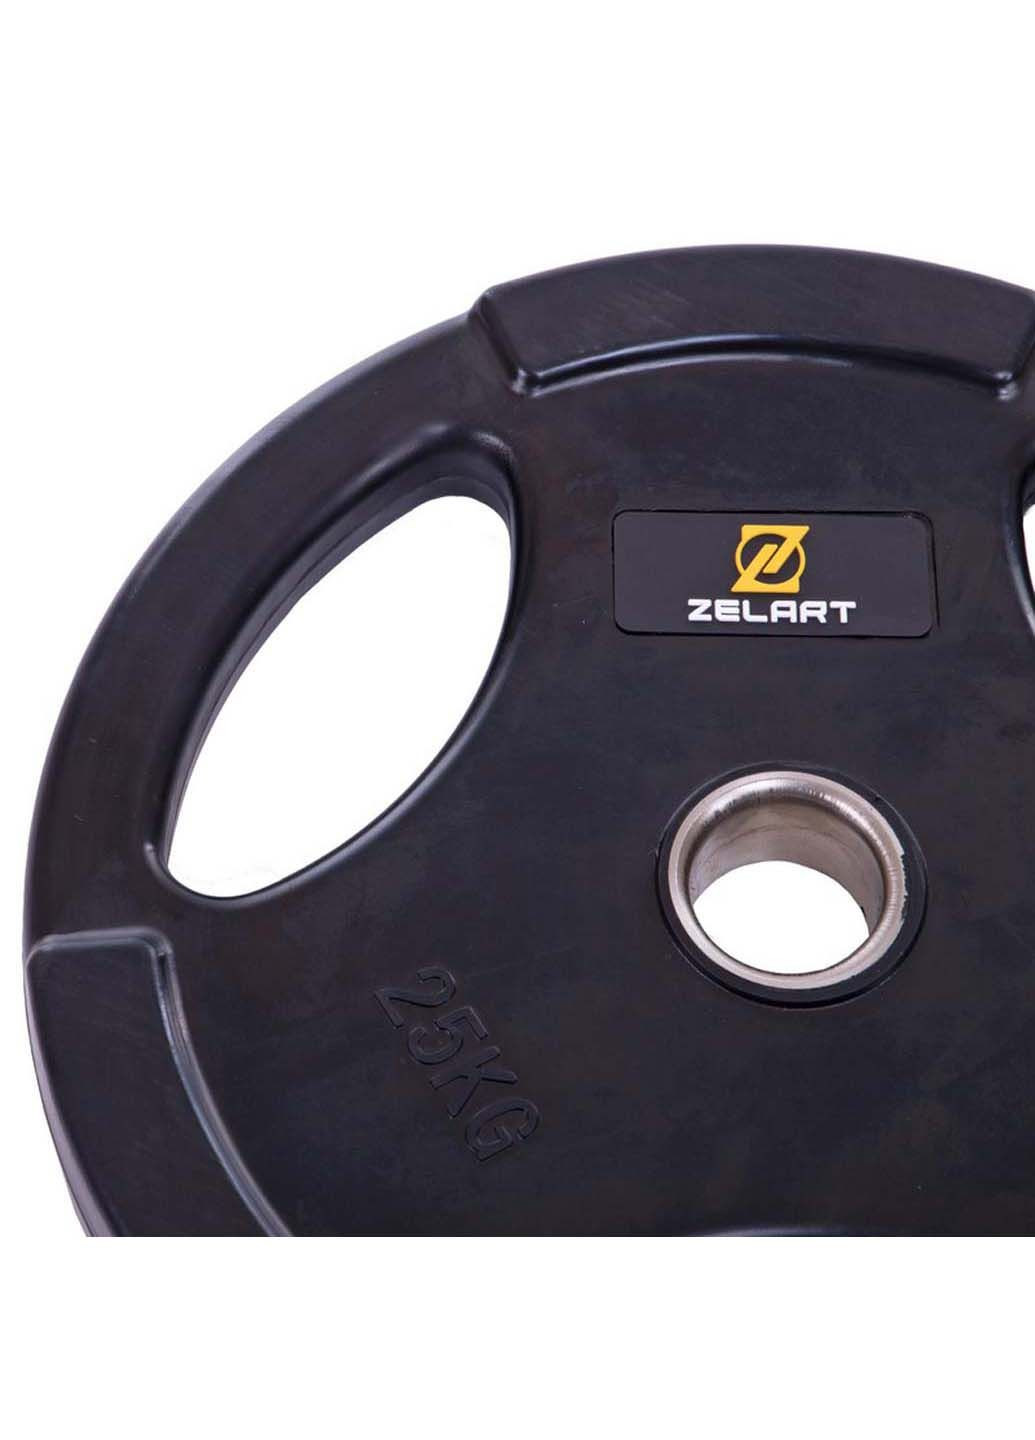 Млинці диски гумові TA-2673 25 кг Zelart (286043438)